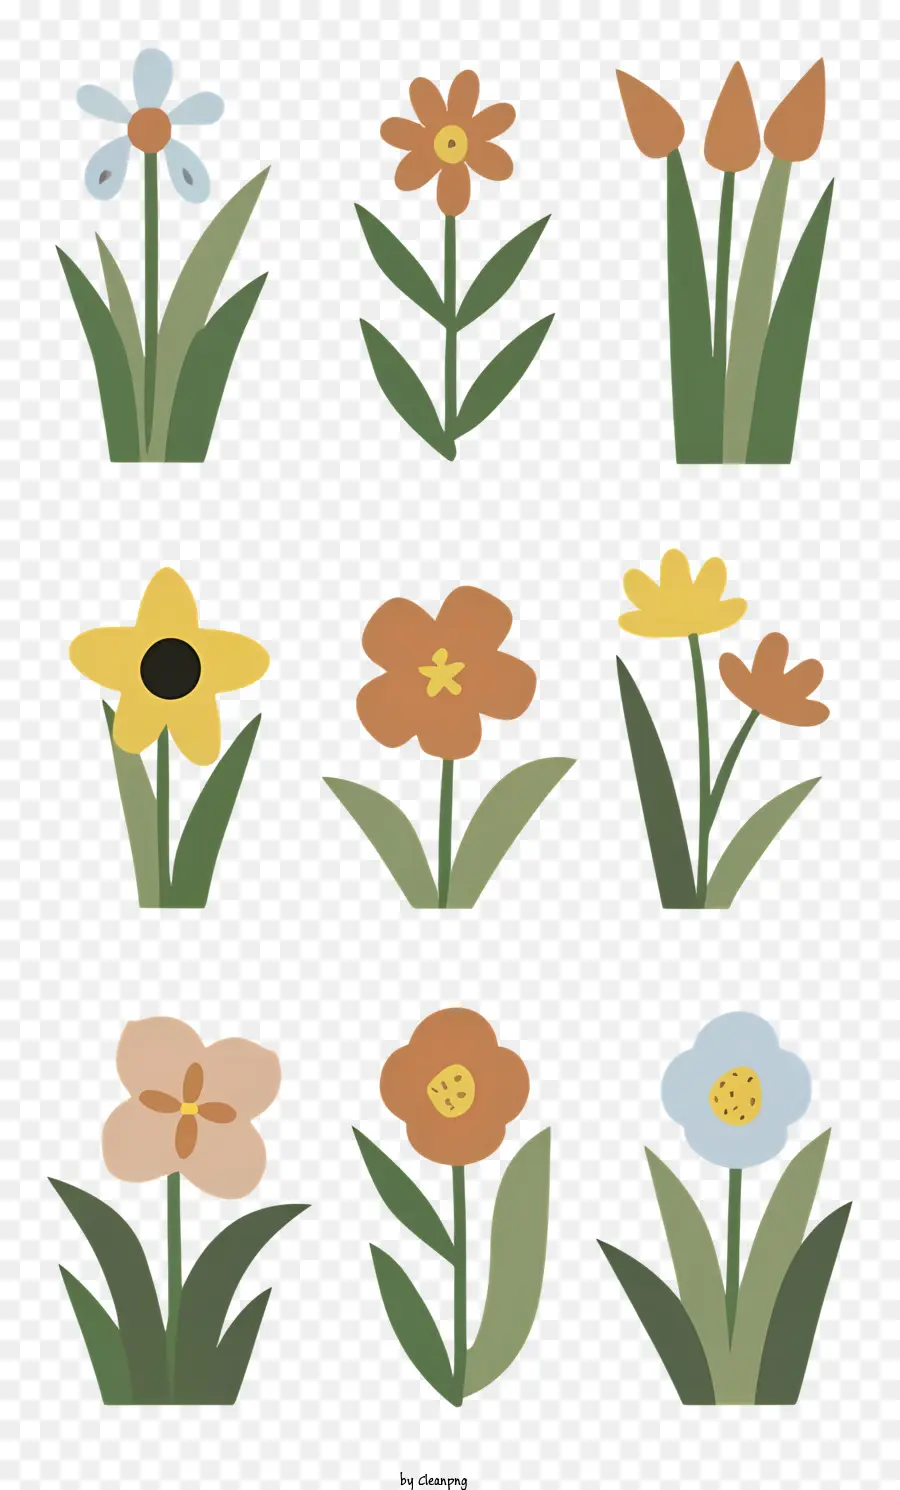 disegno floreale - Design floreale vibrante e semplice con diversi fiori